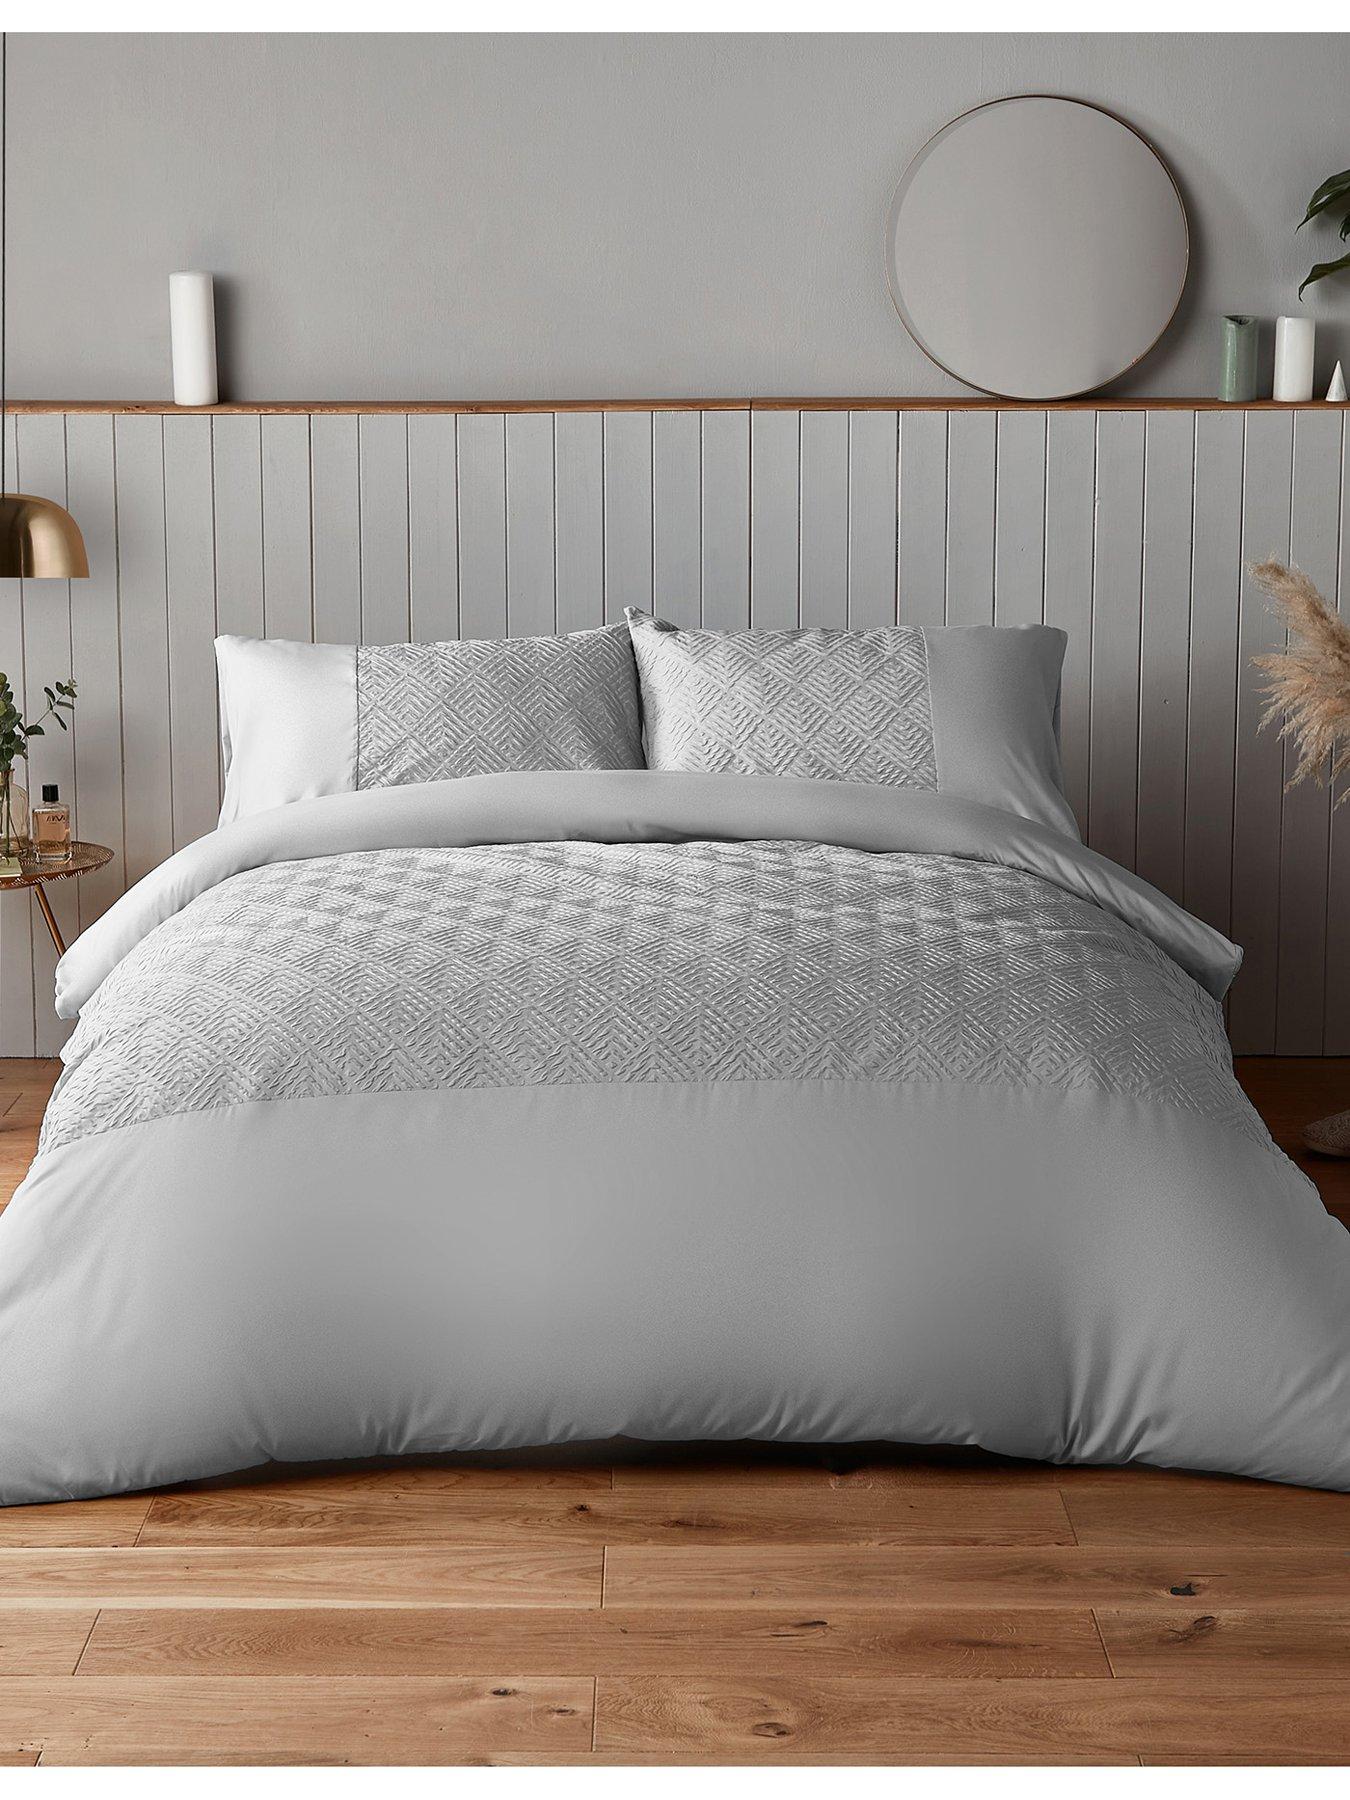 Details about   Outdoor Elements Pillow Sham Decorative Pillowcase 3 Sizes Bedroom Decoration 